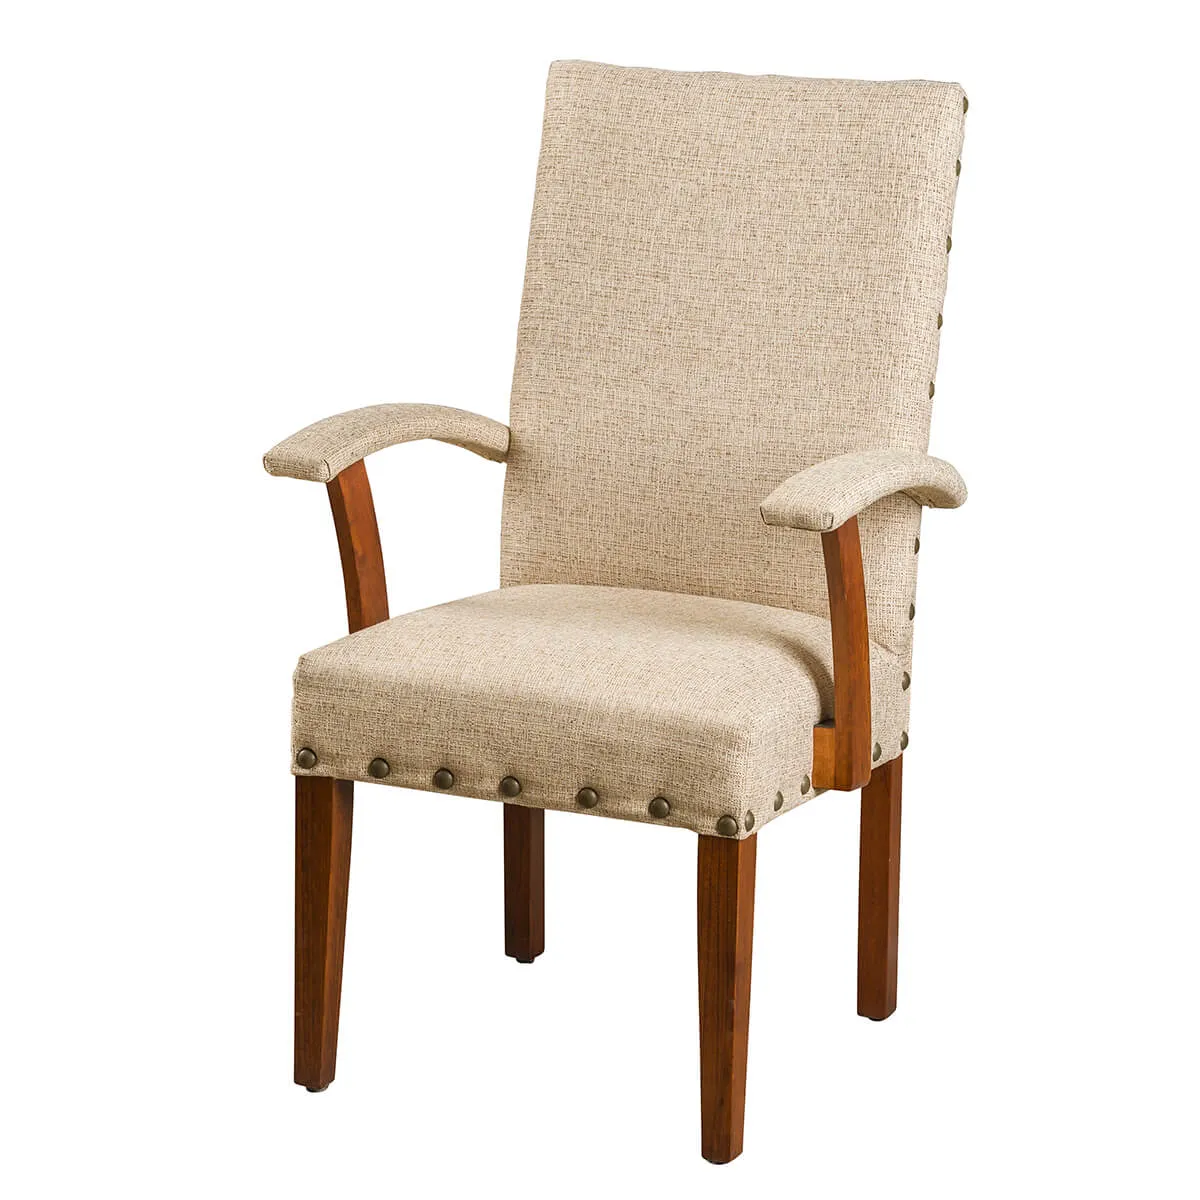 Splendor Arm Chair